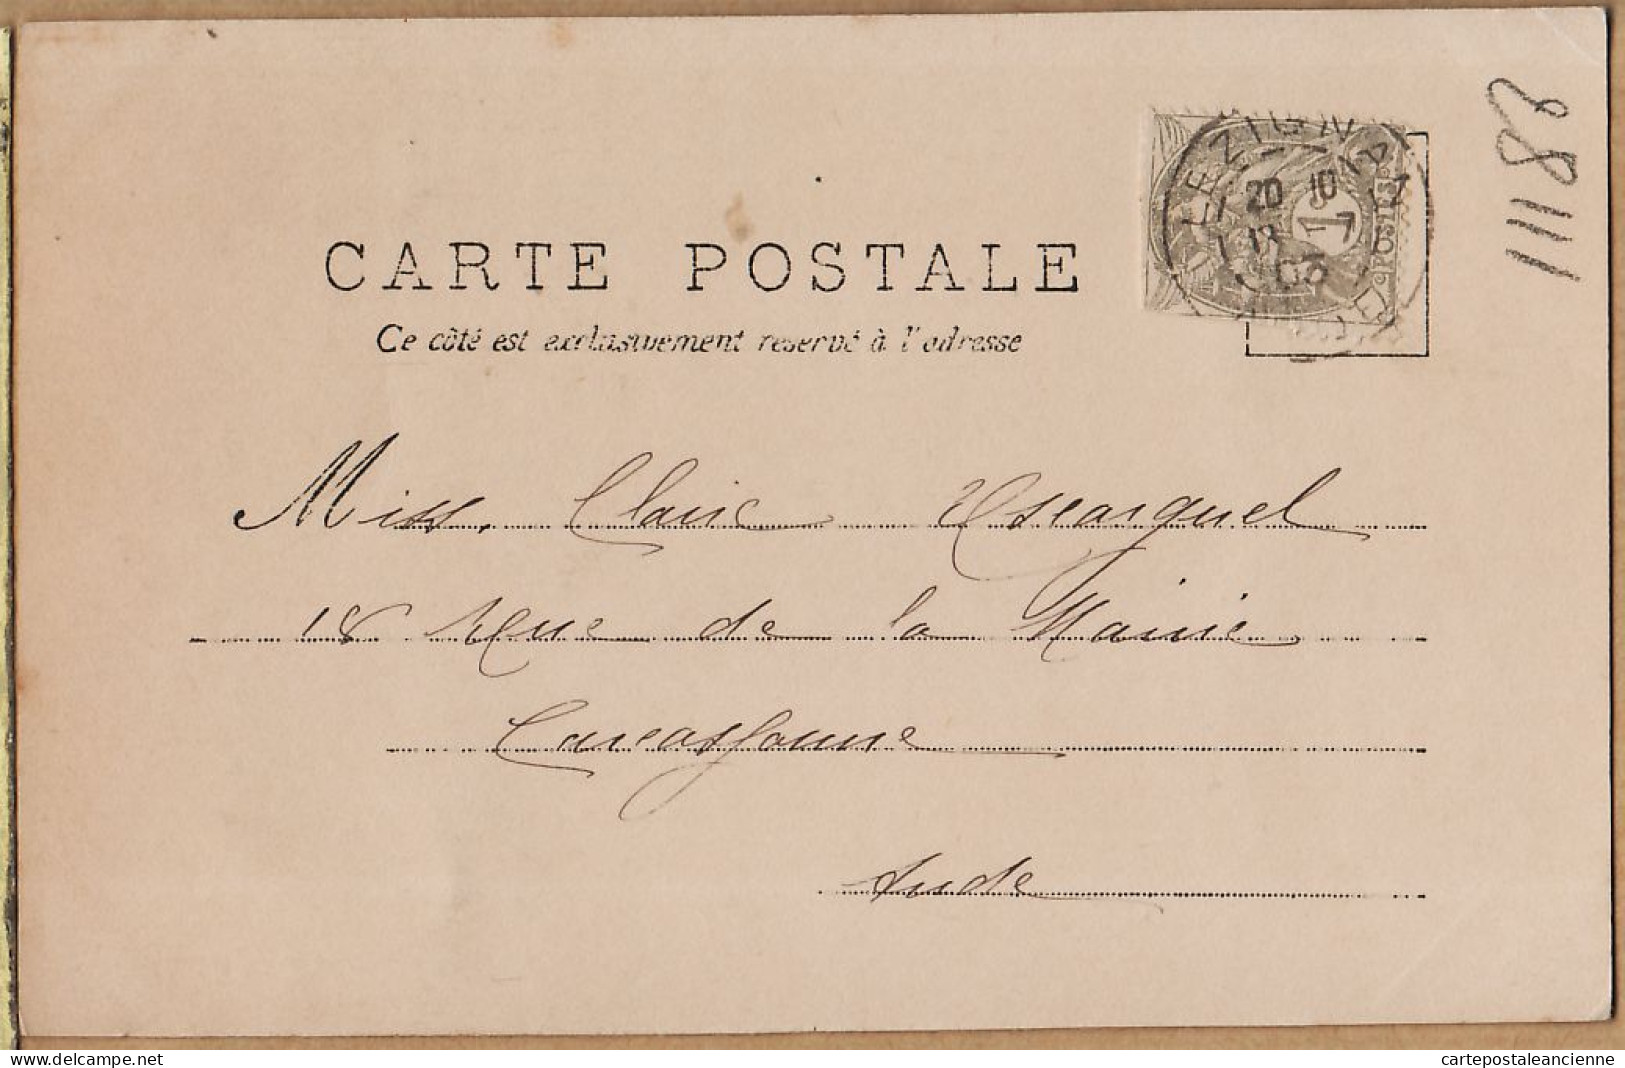 05441 / ⭐ ◉ Métier Marin Pêcheur Carte-Photo NOYER R.P.I N°4 SAINTE VIERGE AYEZ PITIE 1903-Claire ESCARGUEL Carcassonne - Fishing